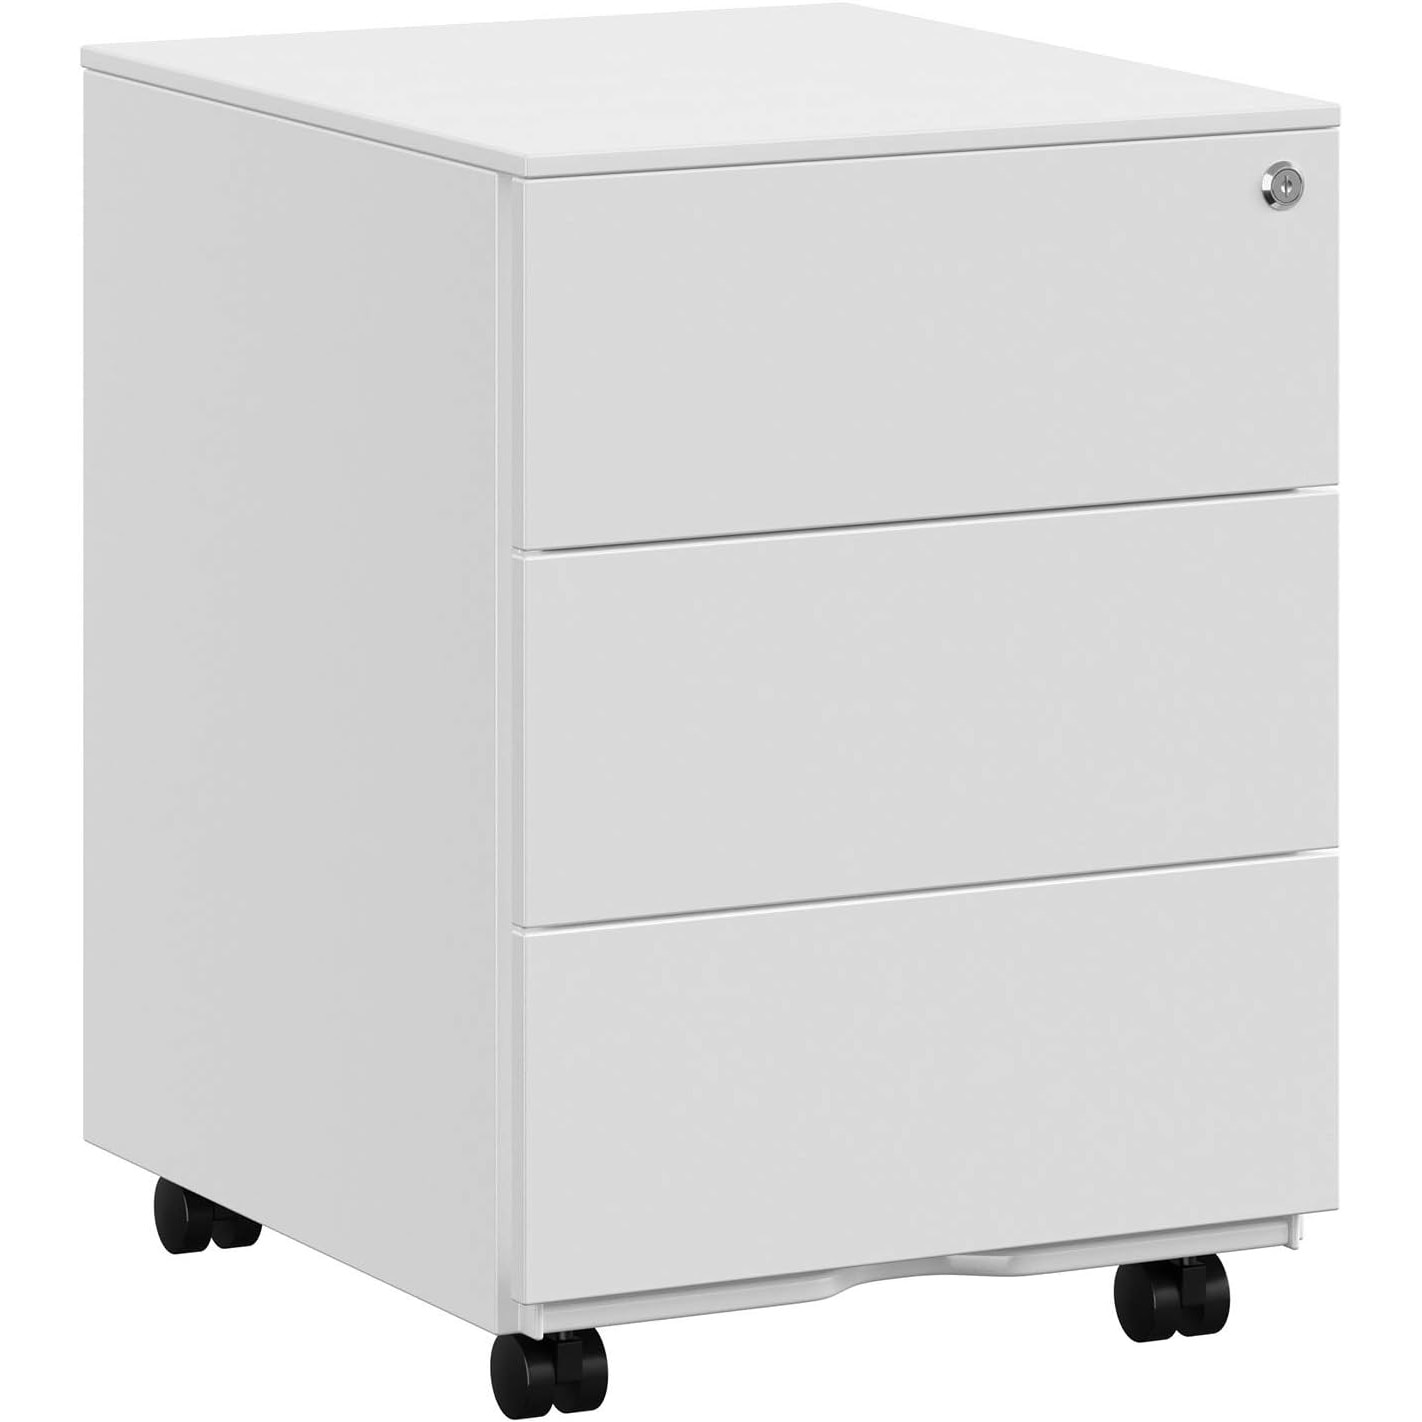 Rollbox metalic pentru birou, cu 3 sertare cu incuietoare, suport dedicat  pentru agrafe si capse, metal, 45 x 39 x 55 cm, alb | Rollcontainer